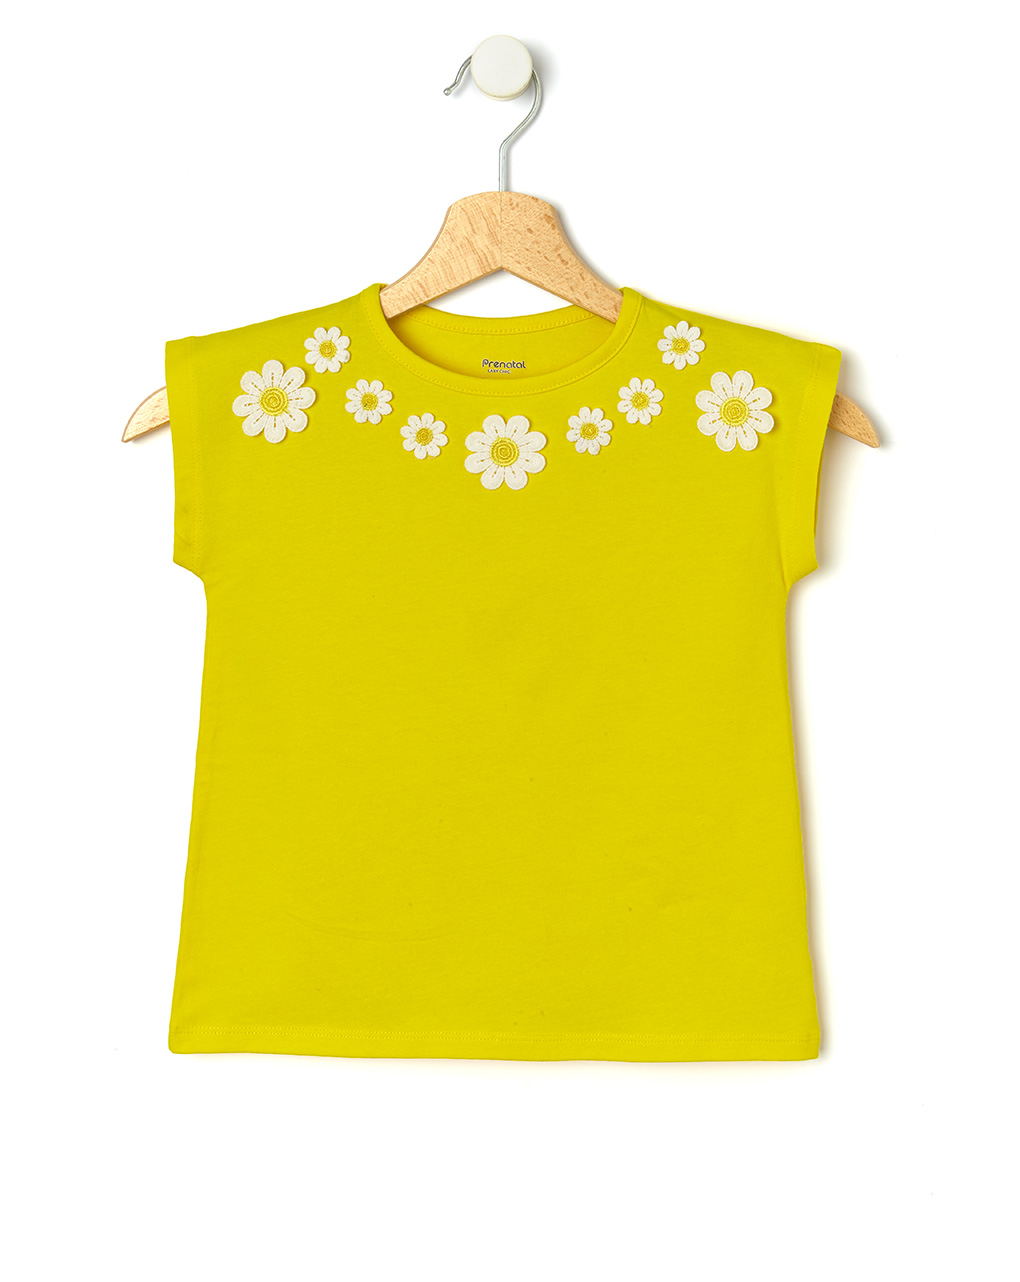 T-shirt jersey κίτρινο με μαργαρίτες για κορίτσι - Prénatal